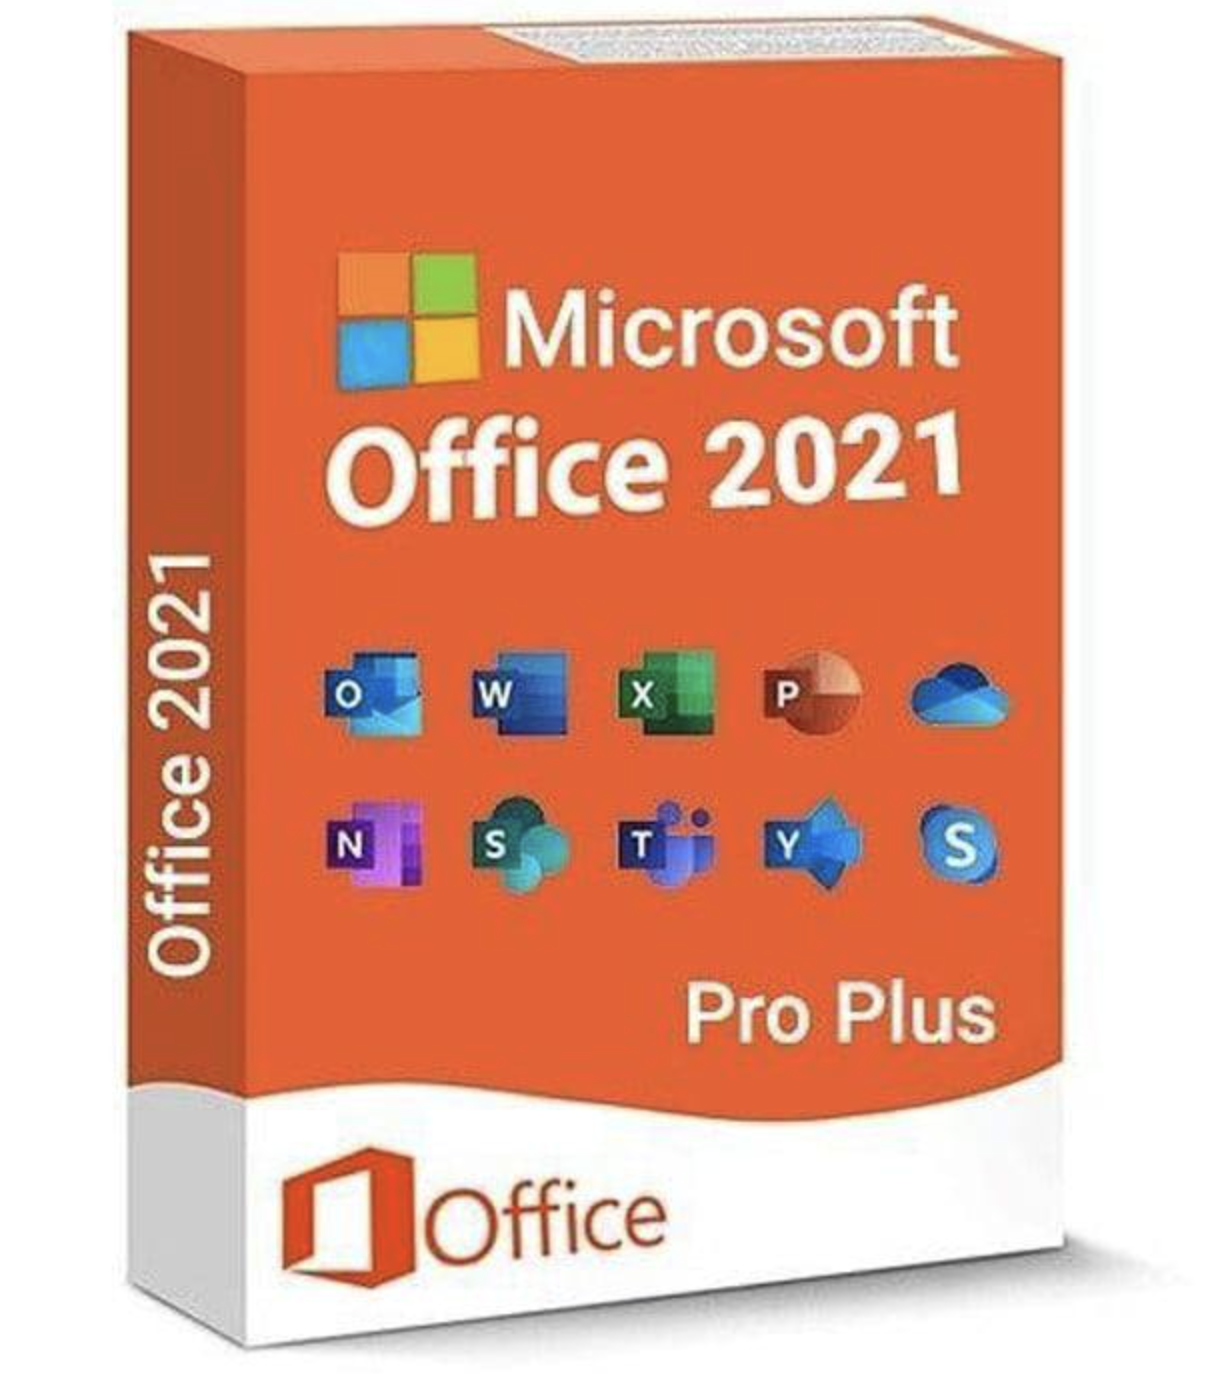 Buy key Microsoft Office 2021 Pro Plus key 1PC WARRANTY